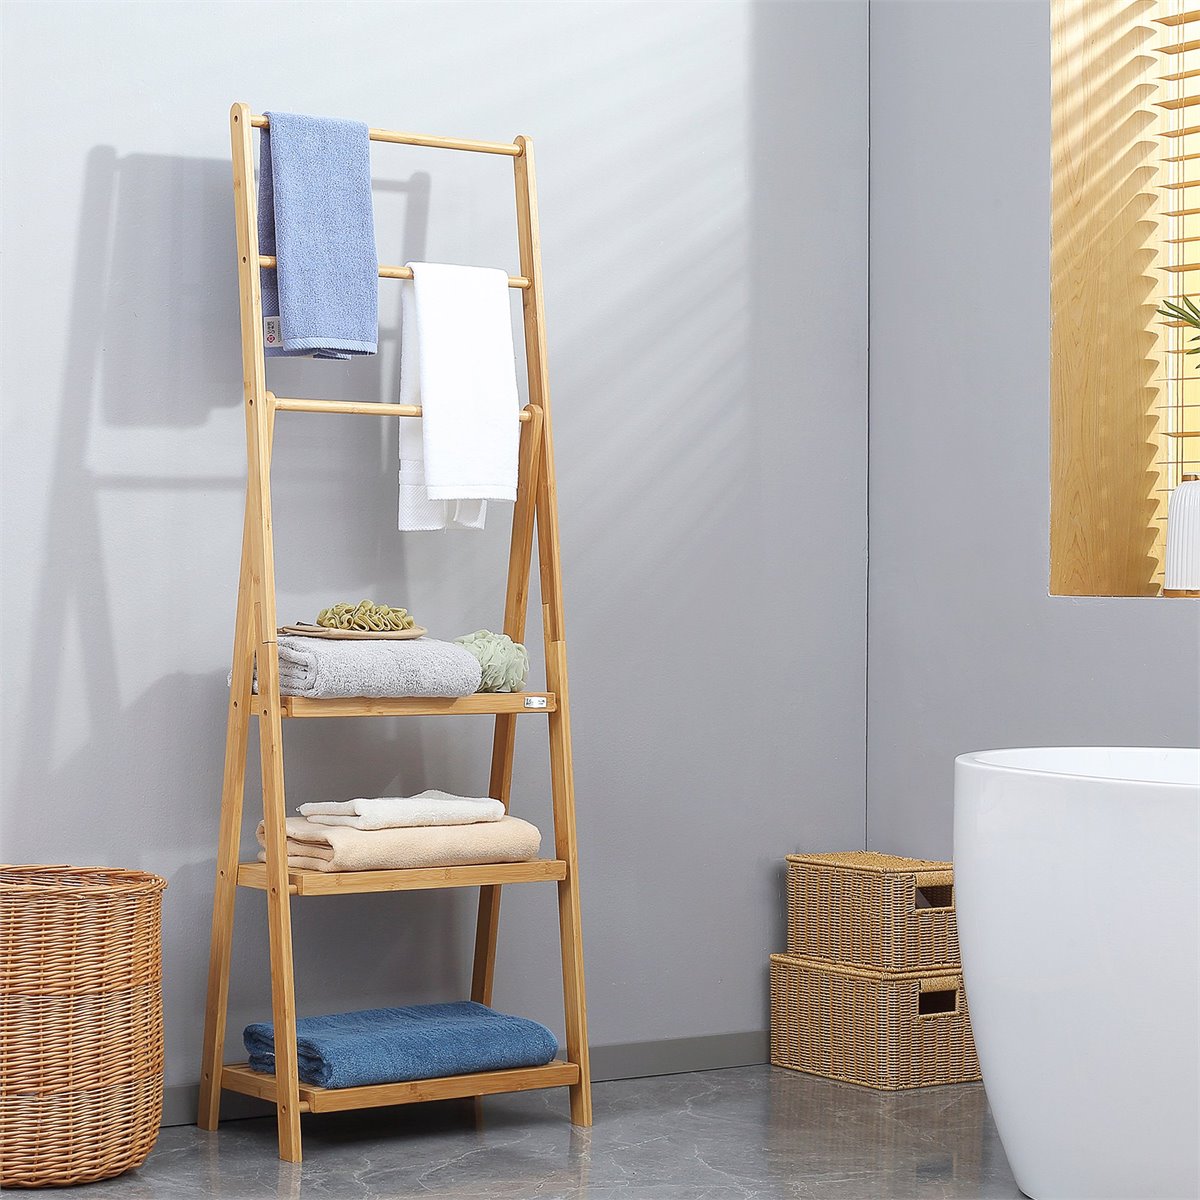  Toallero de pie para baño, escalera decorativa de bambú de 5  pies con 3 niveles y 3 estantes, una escalera decorativa única plegable y  multifuncional. Escalera para edredón en el dormitorio. 